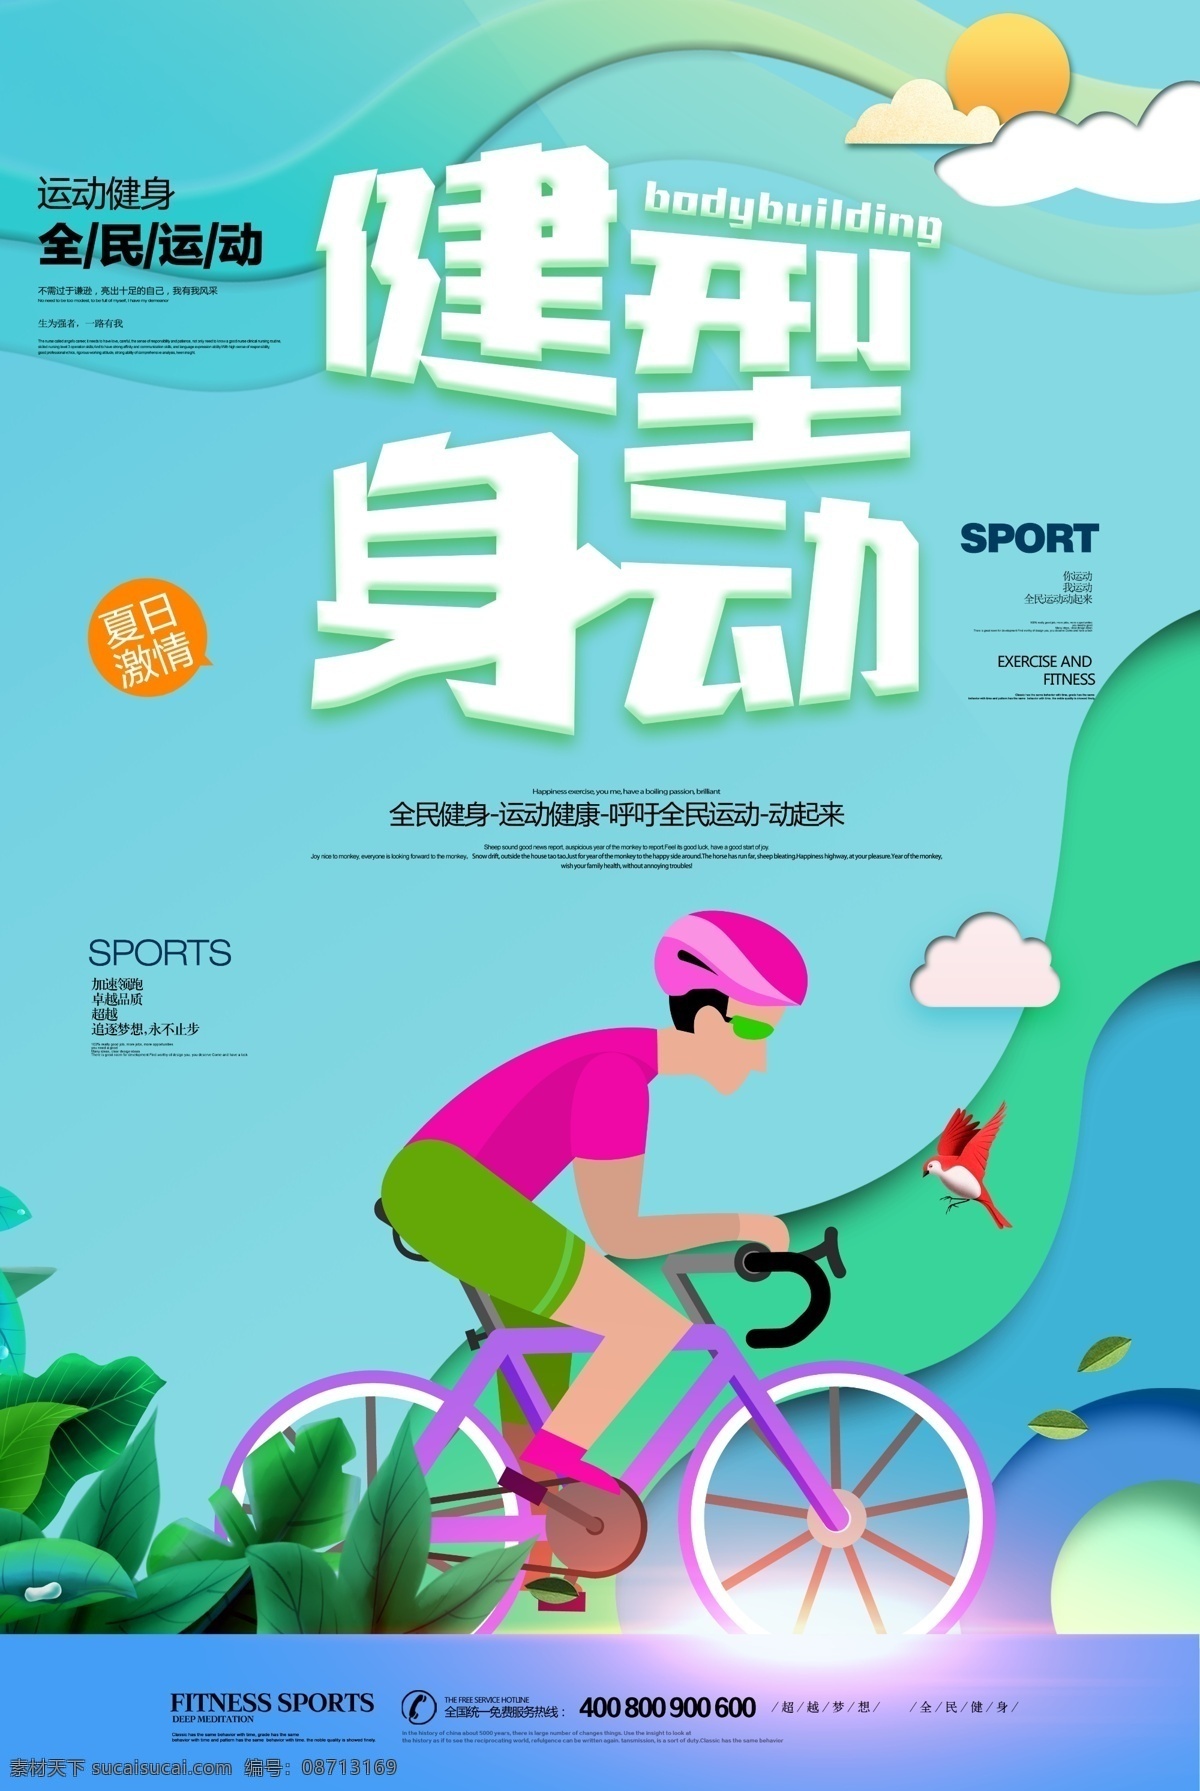 绿色 健康 健身 运动 健身活动 运动海报 运动模板 健康运动 自行车比赛 健身行动 健康行动 健身活力 踩单车活动 健身比赛